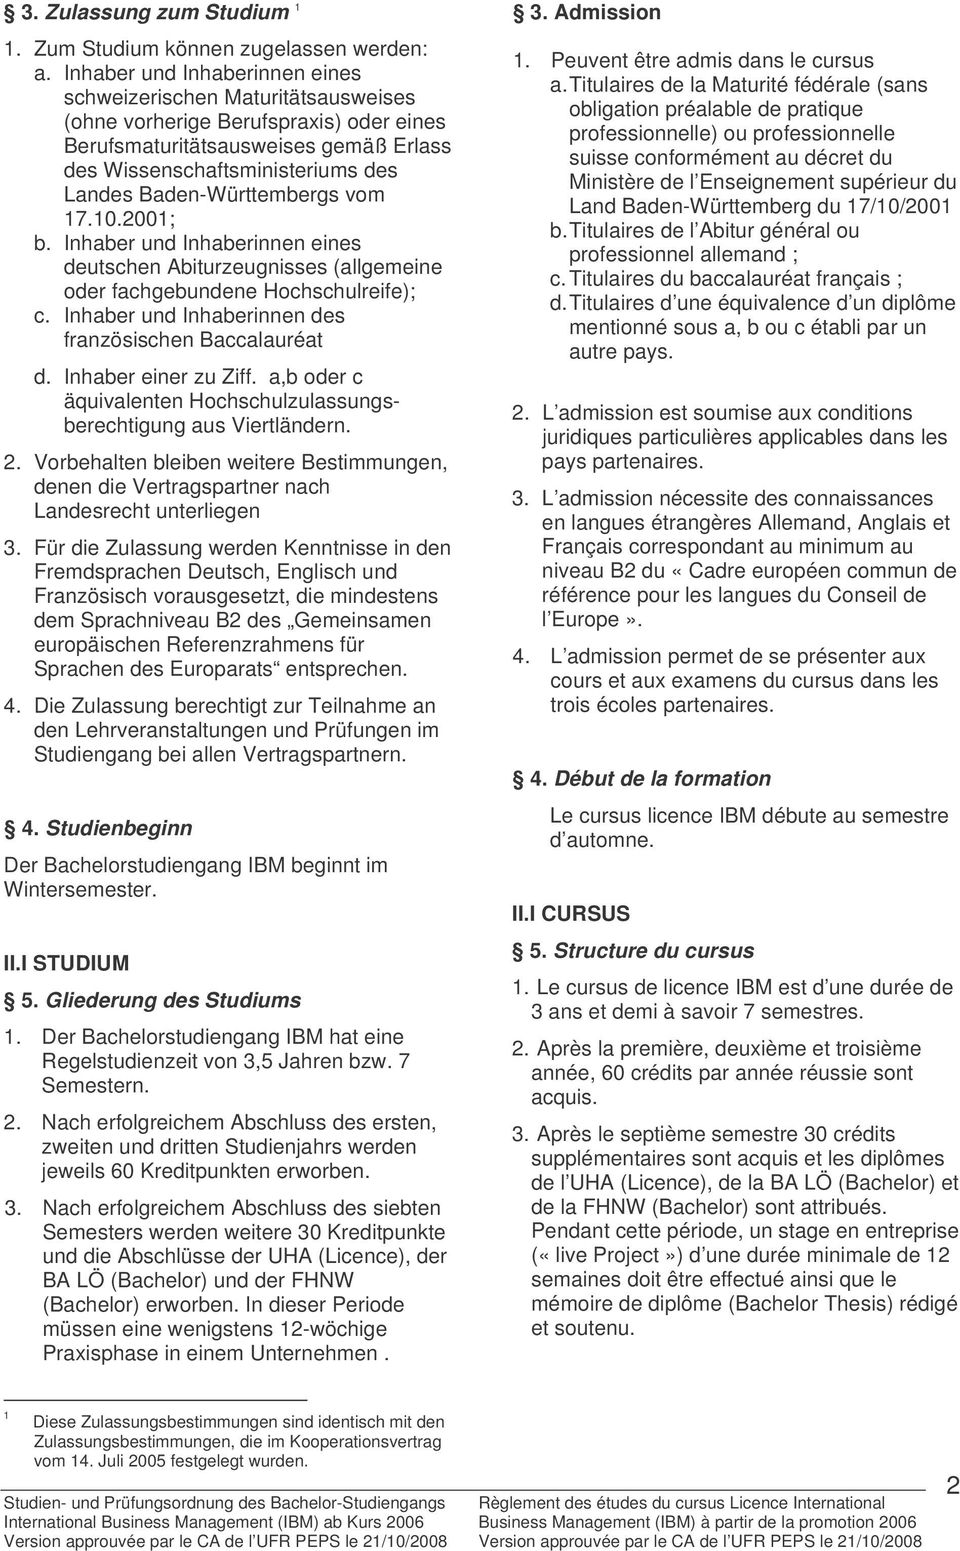 Baden-Württembergs vom 17.10.2001; b. Inhaber und Inhaberinnen eines deutschen Abiturzeugnisses (allgemeine oder fachgebundene Hochschulreife); c.